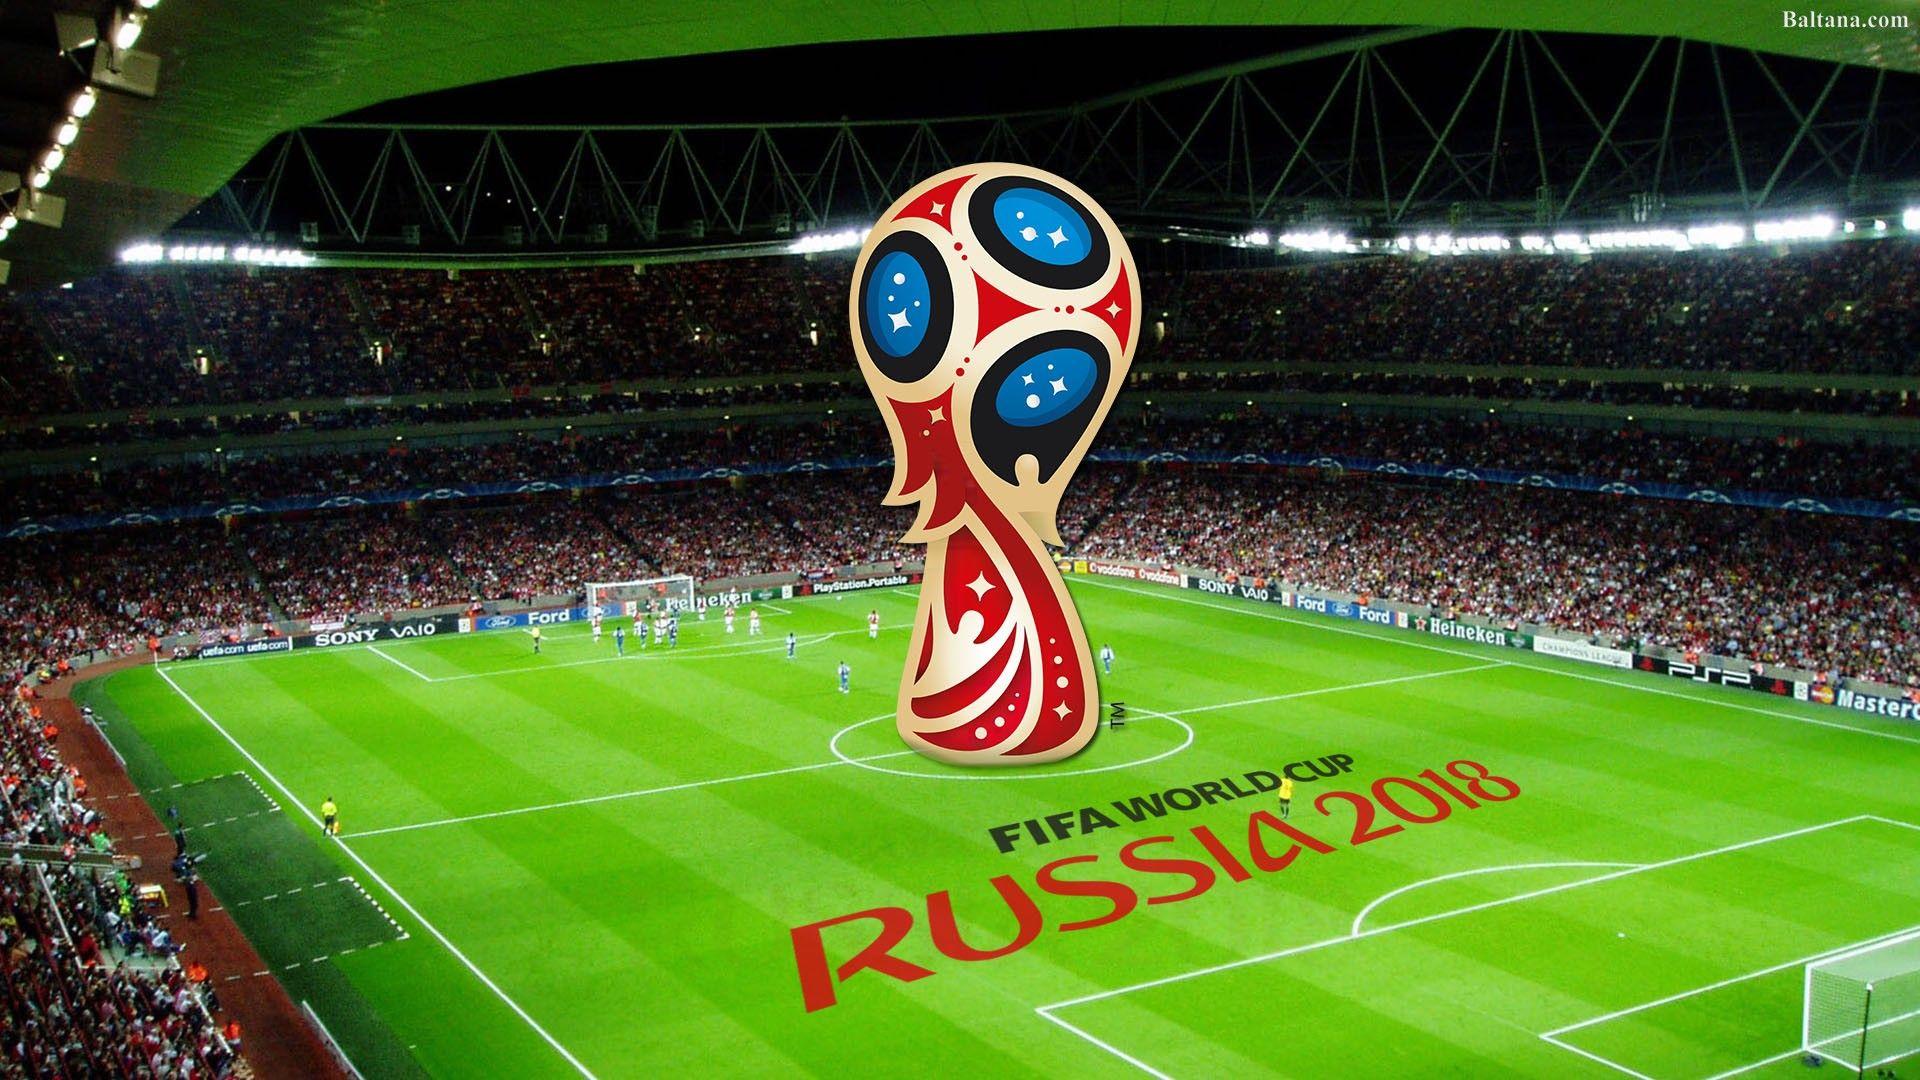 FIFA World Cup Widescreen .baltana.com